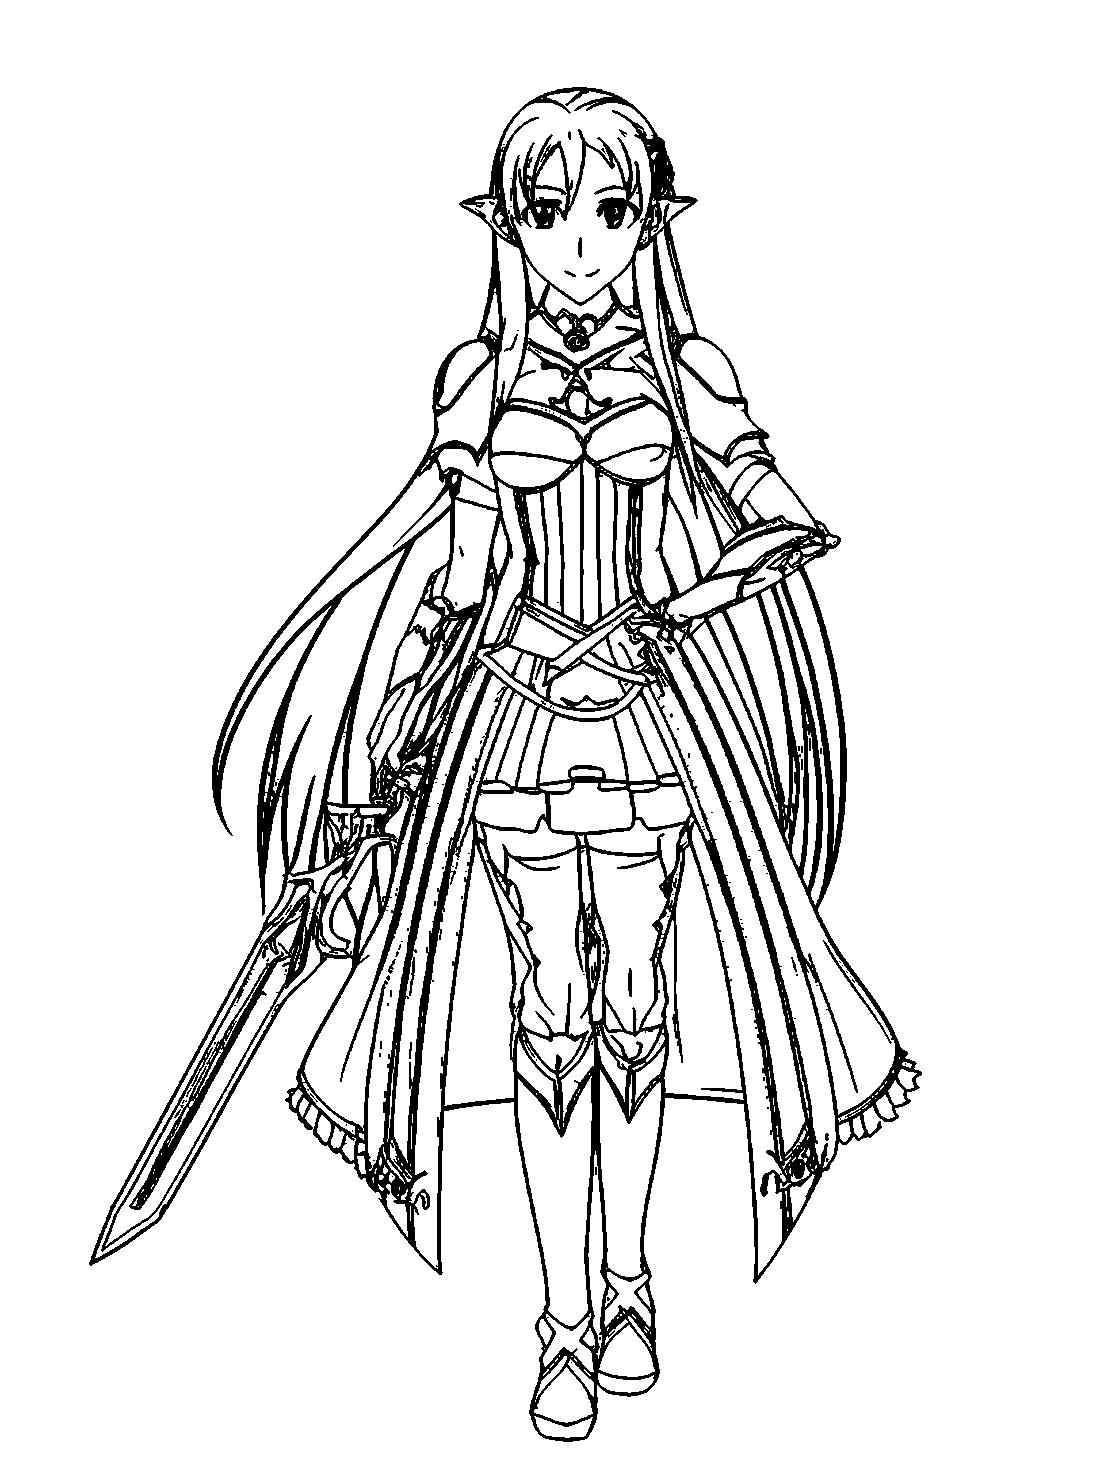 Asuna From Sword Art Online